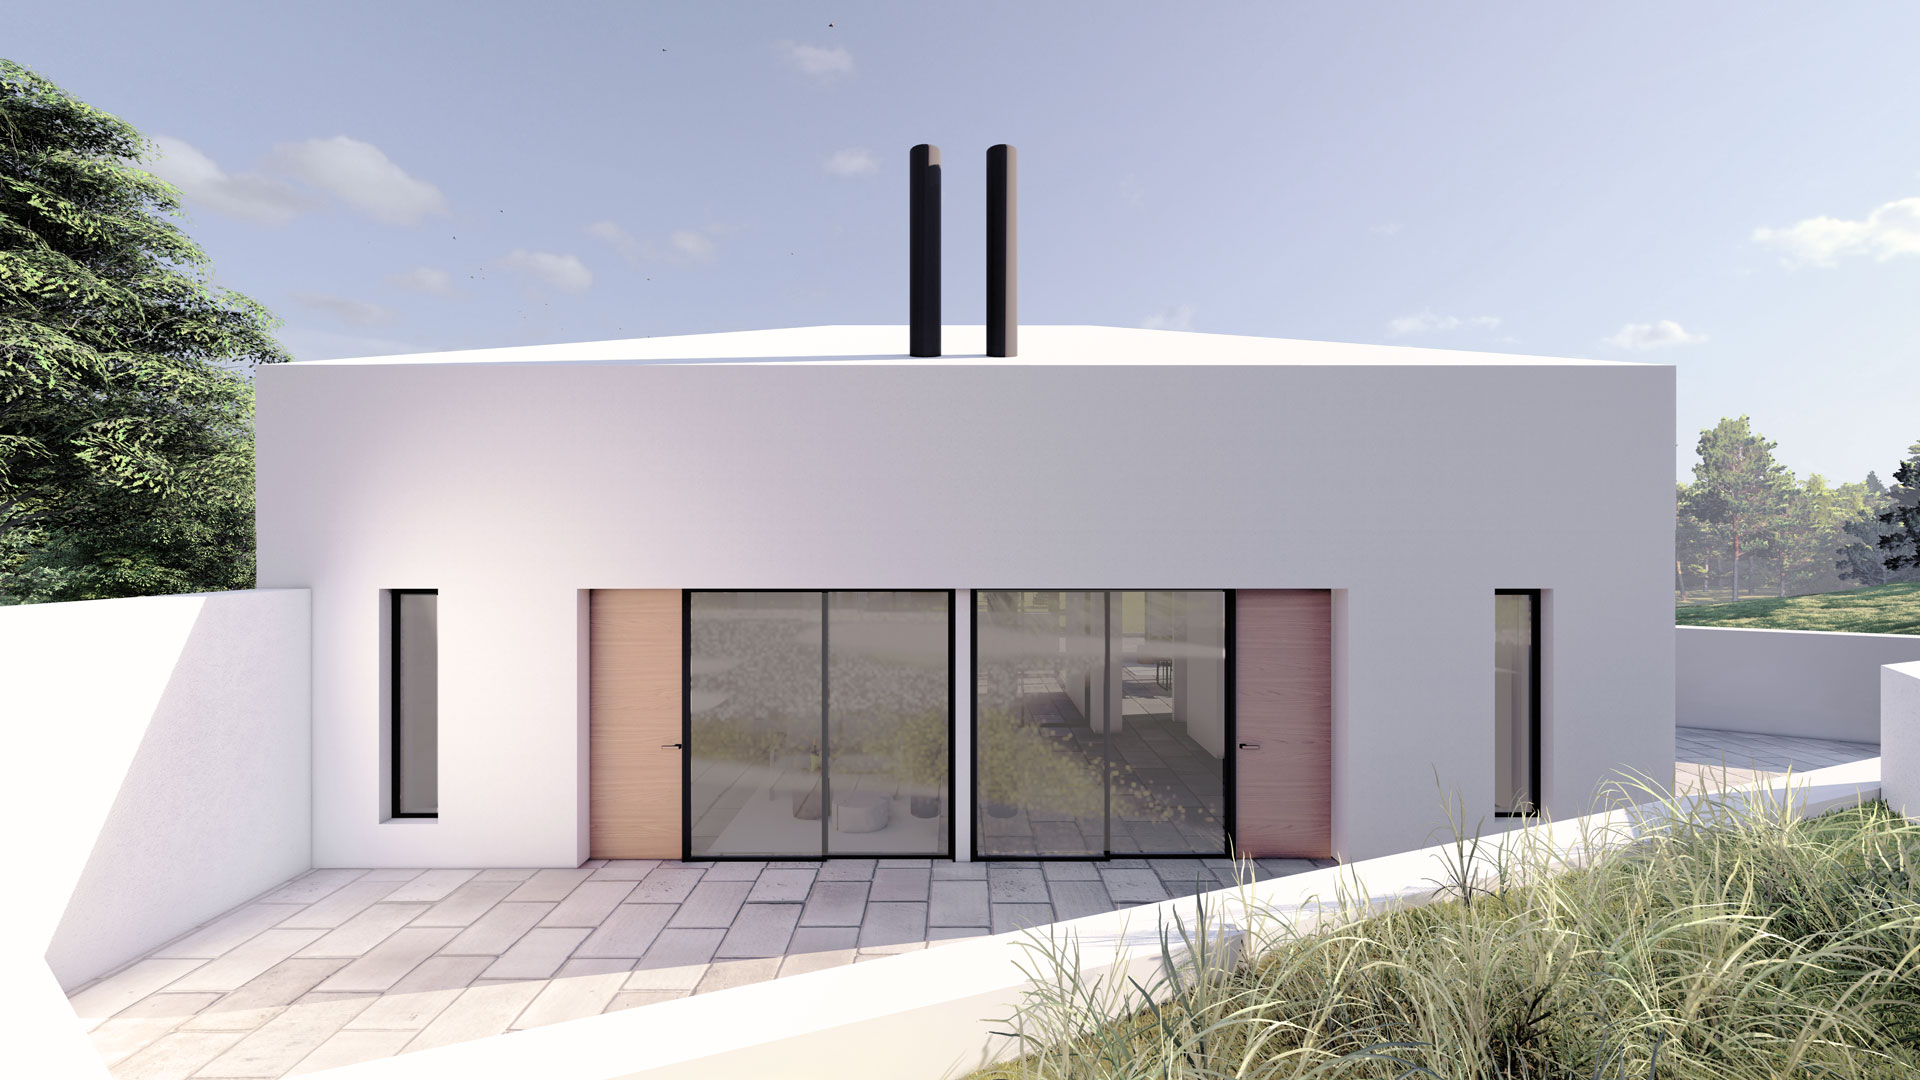 φωτορεαλιστικο render μπροστινή πρόσοψη εξωτερικός χώρος patio house άρτα ελλάδα the hive architects